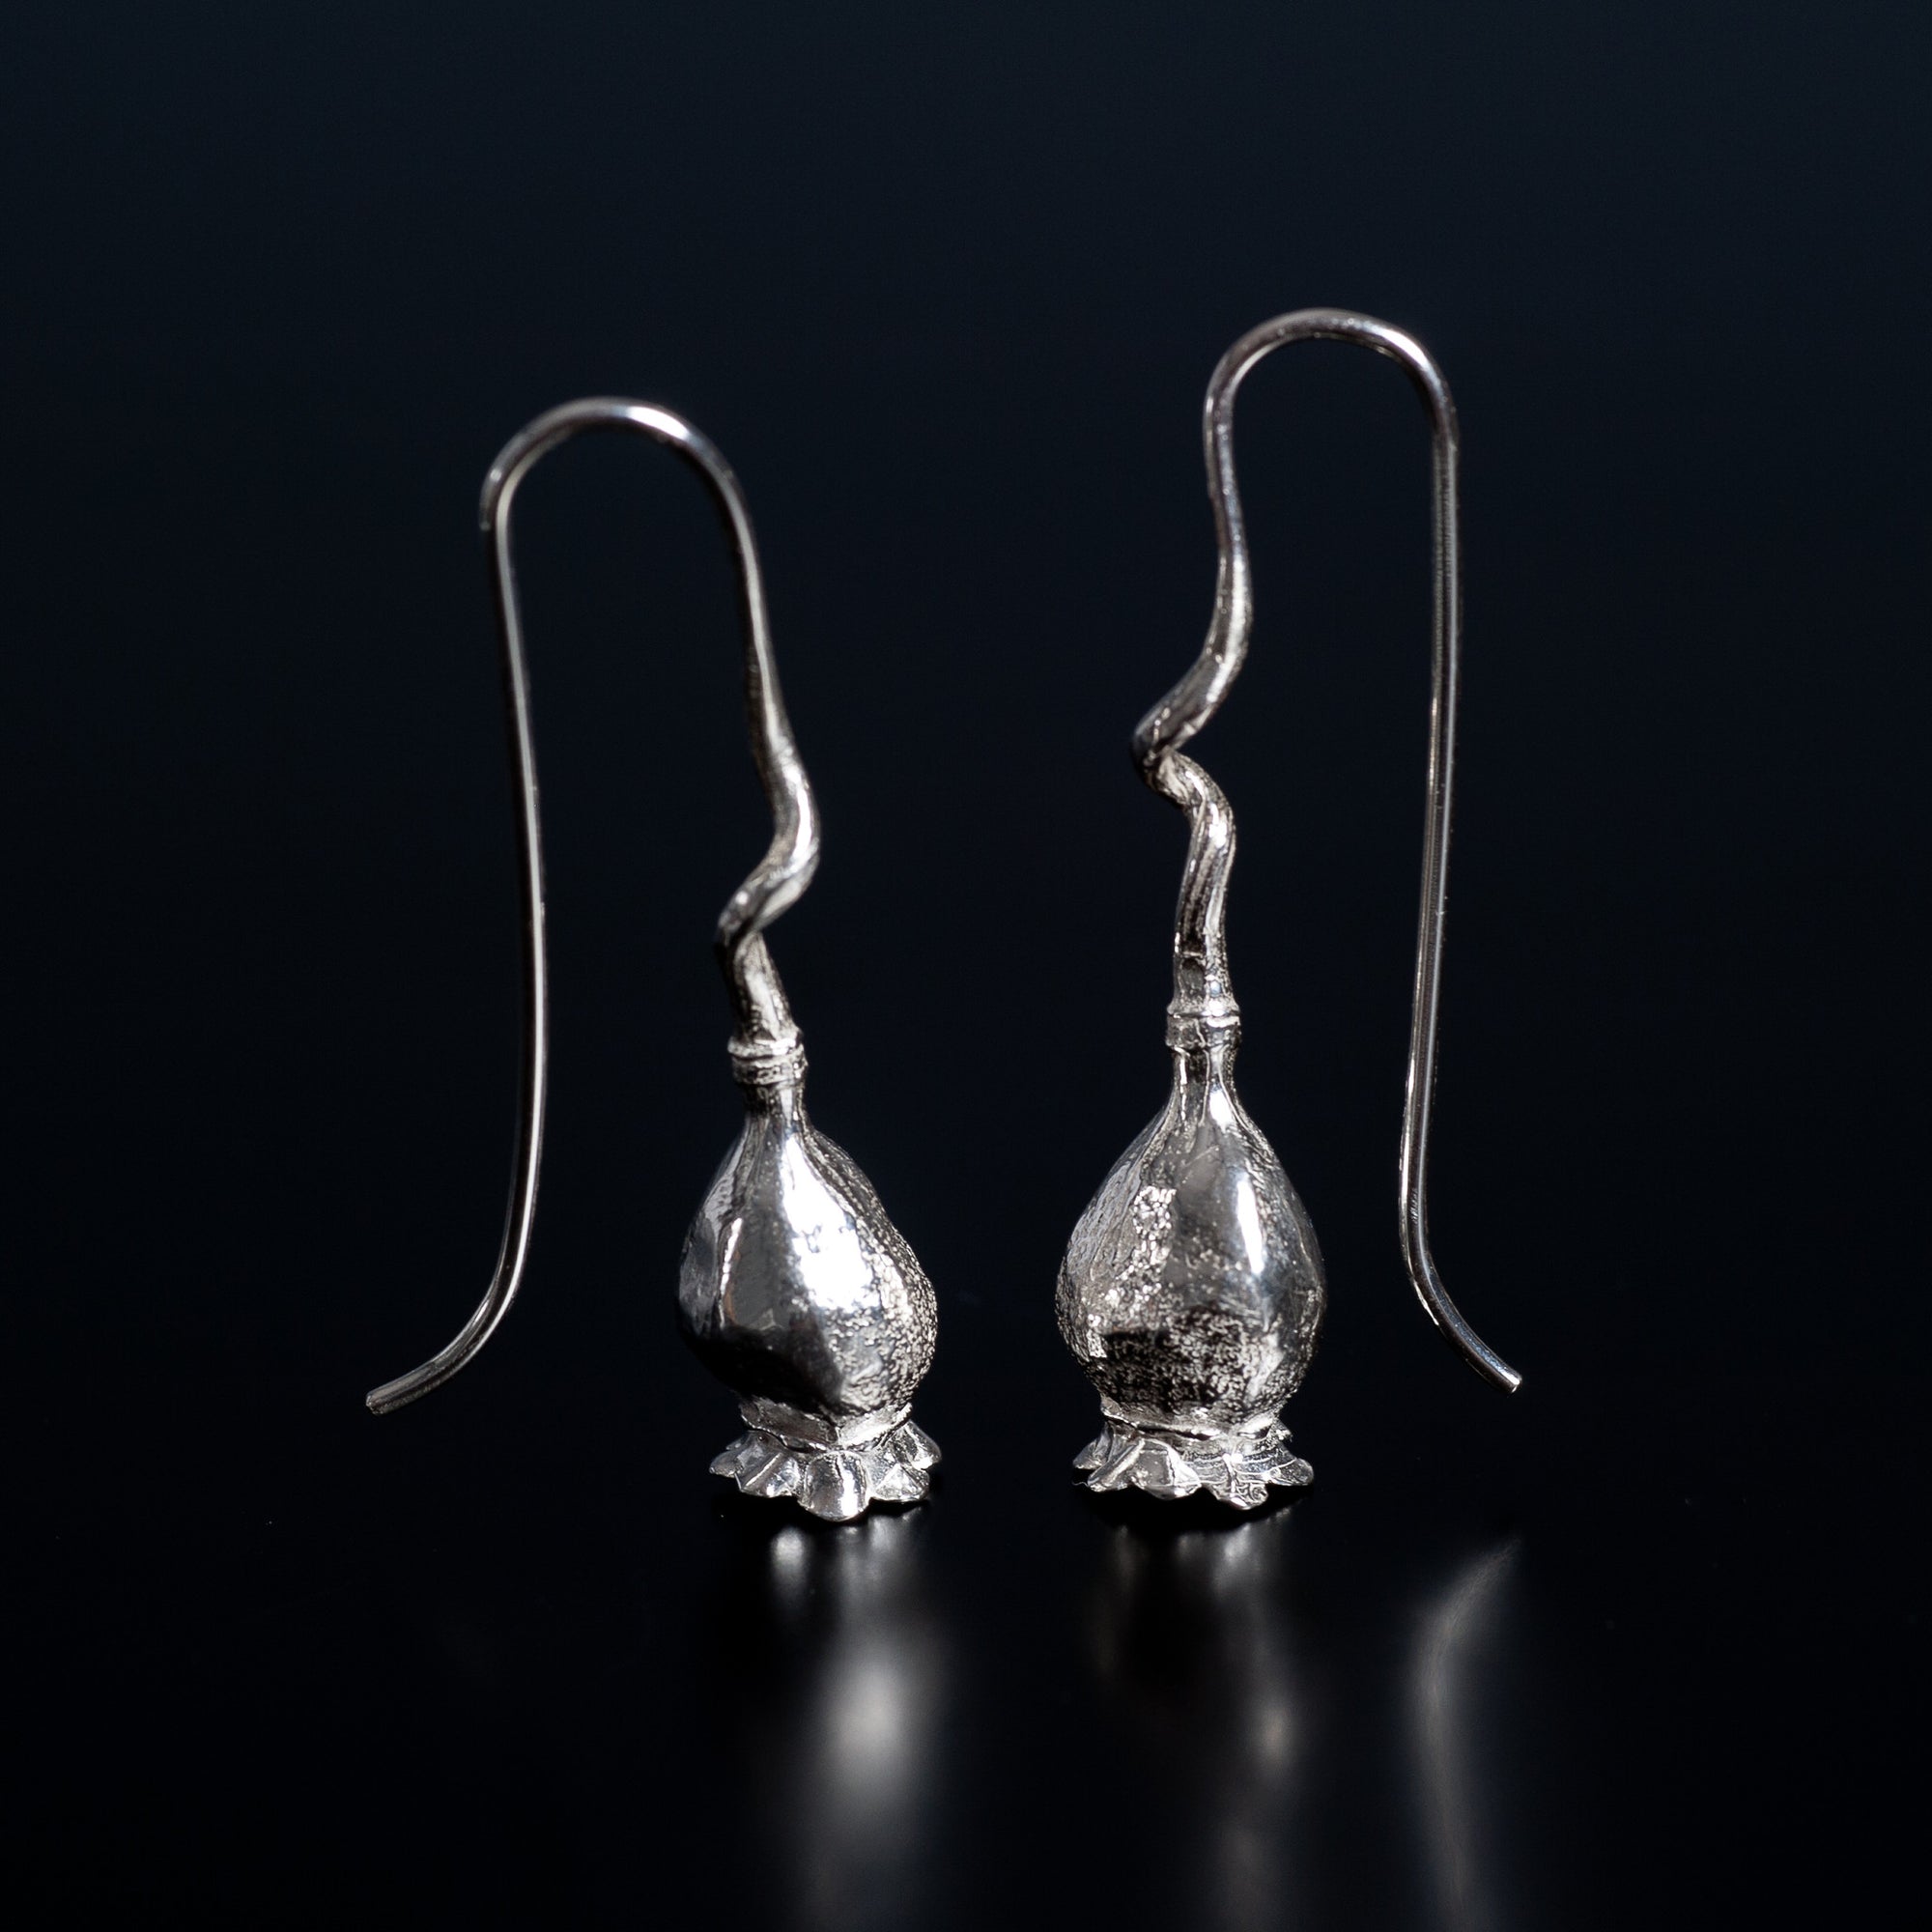 Single Poppy Twist Earrings in Sterling Silver - Juvelisto - Earrings - Juvelisto Design - 1